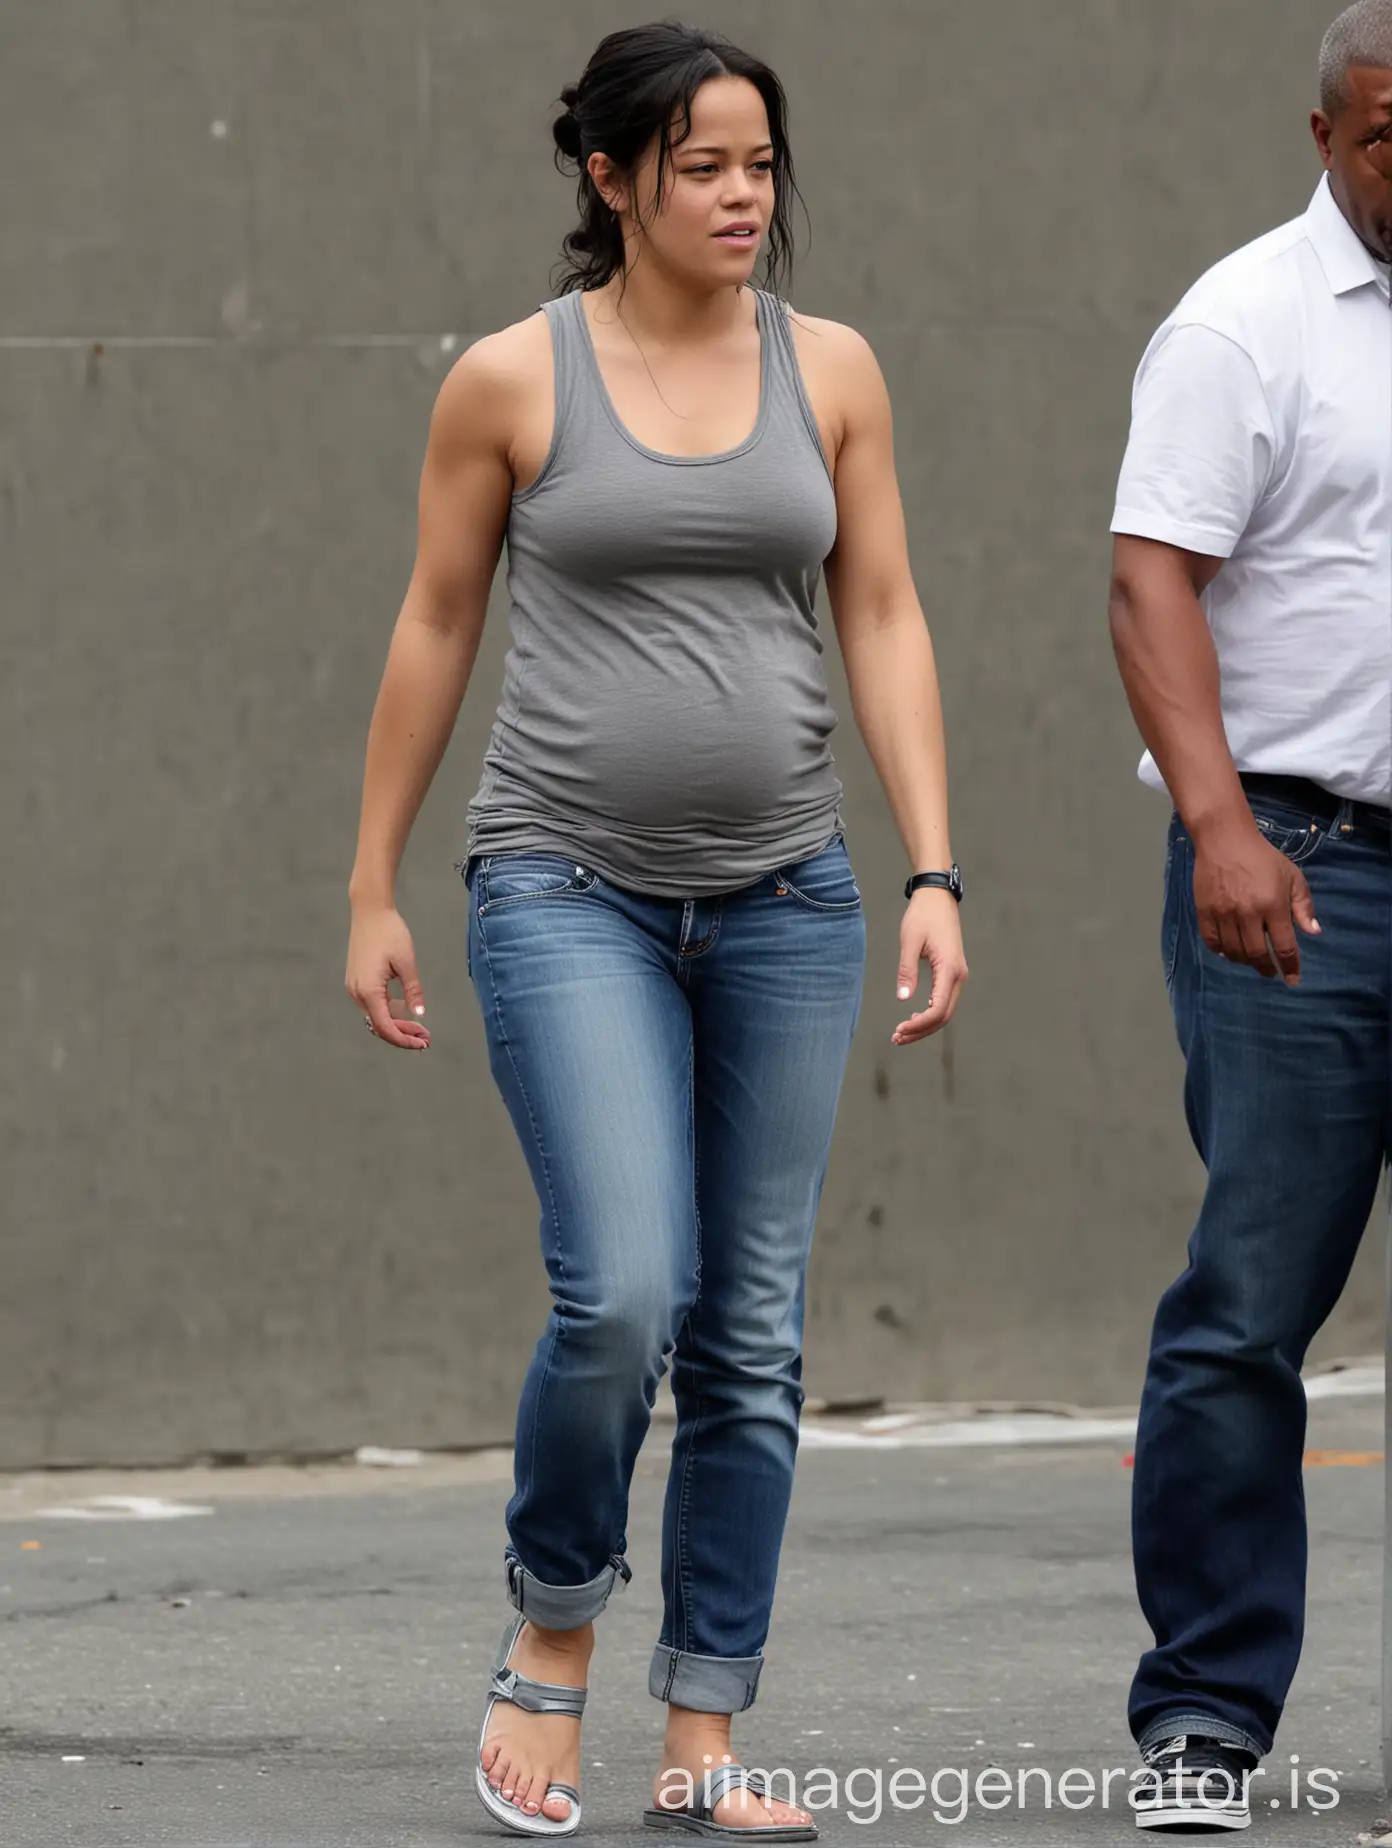 Pregnant-Single-Mom-Michelle-Rodriguez-Arrested-in-Casual-Attire